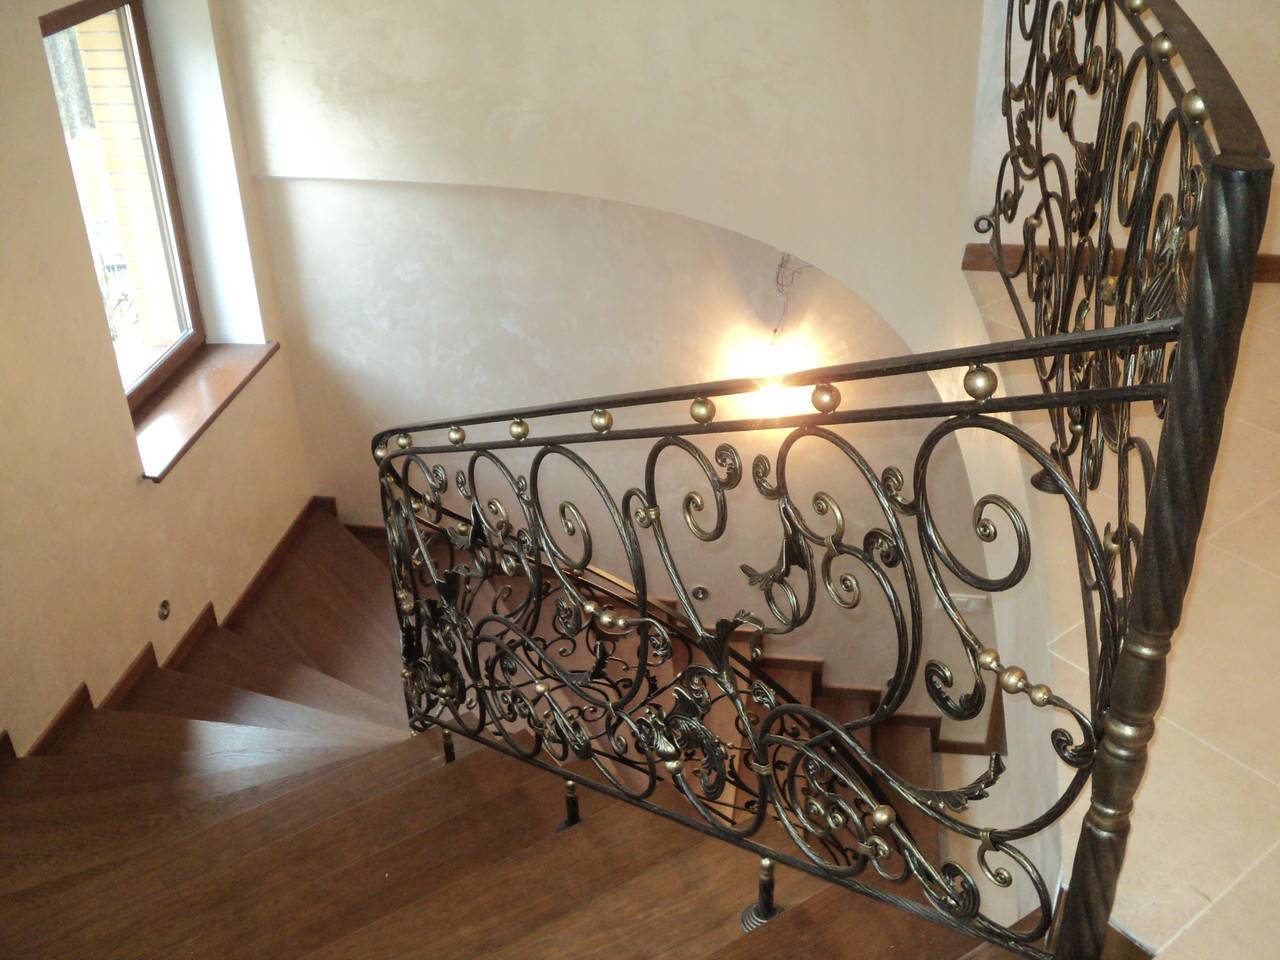 Кованые лестницы в доме, особенности и достоинства конструкции, что влияет на стоимость, критерии выбора - 16 фото